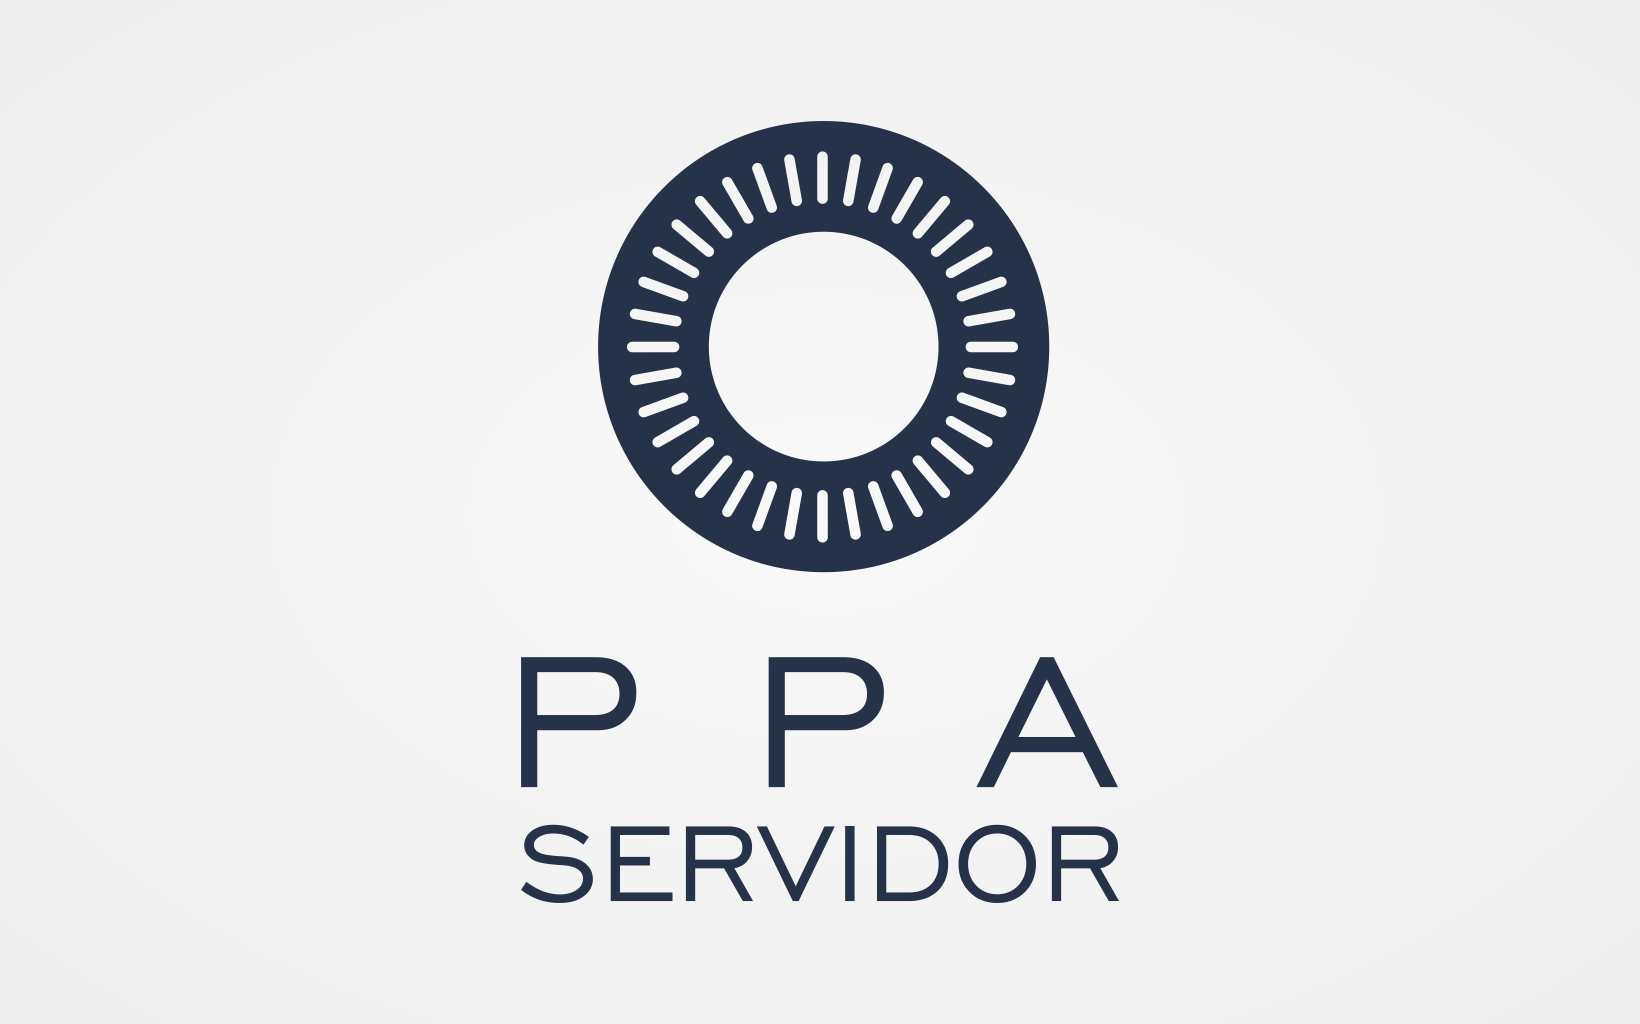 PPA Servidor - Secretaria de Segurança e Secretaria de Gestão Administrativa